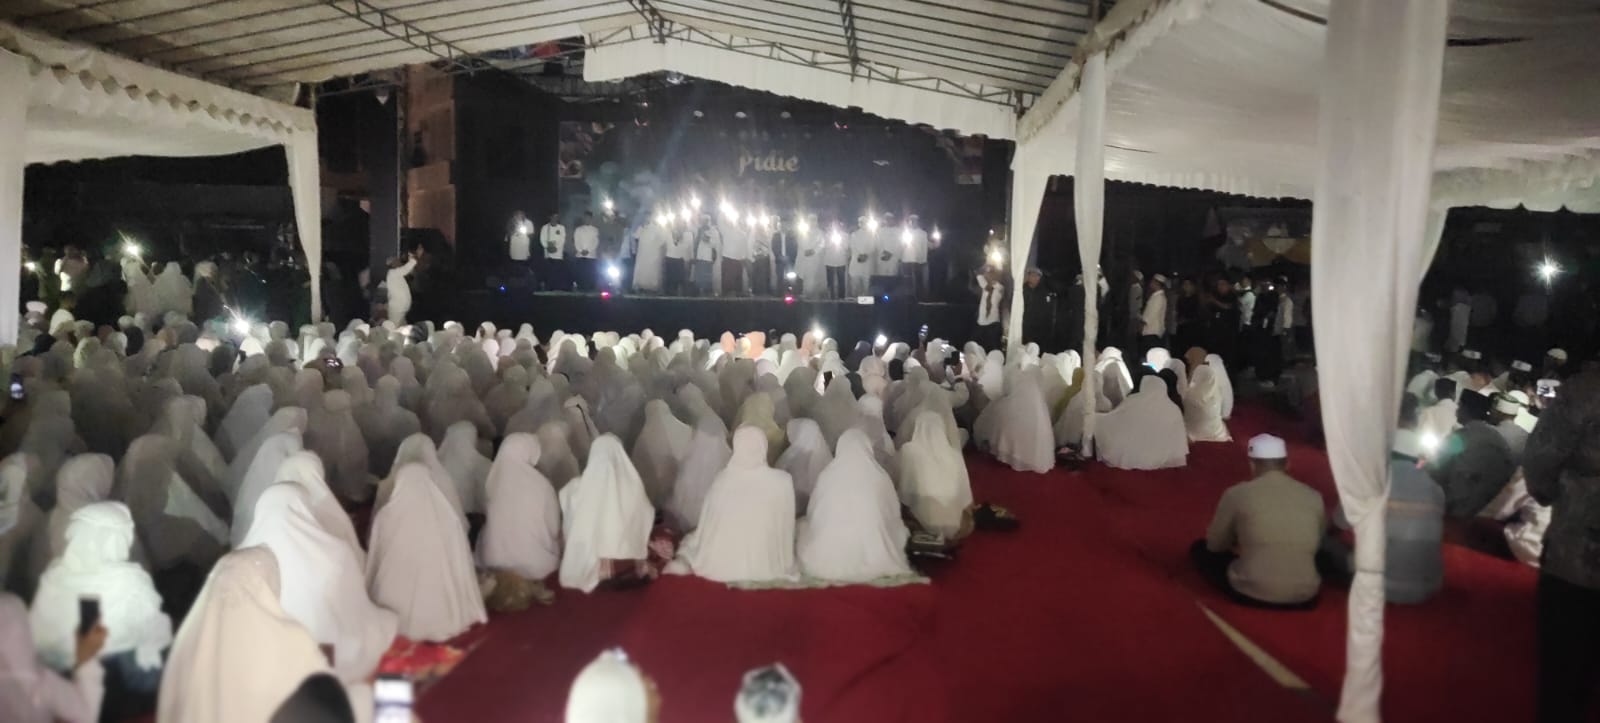 Ribuan jemaah larut dalam zikir akbar bertema 'Pidie Bershalawat'